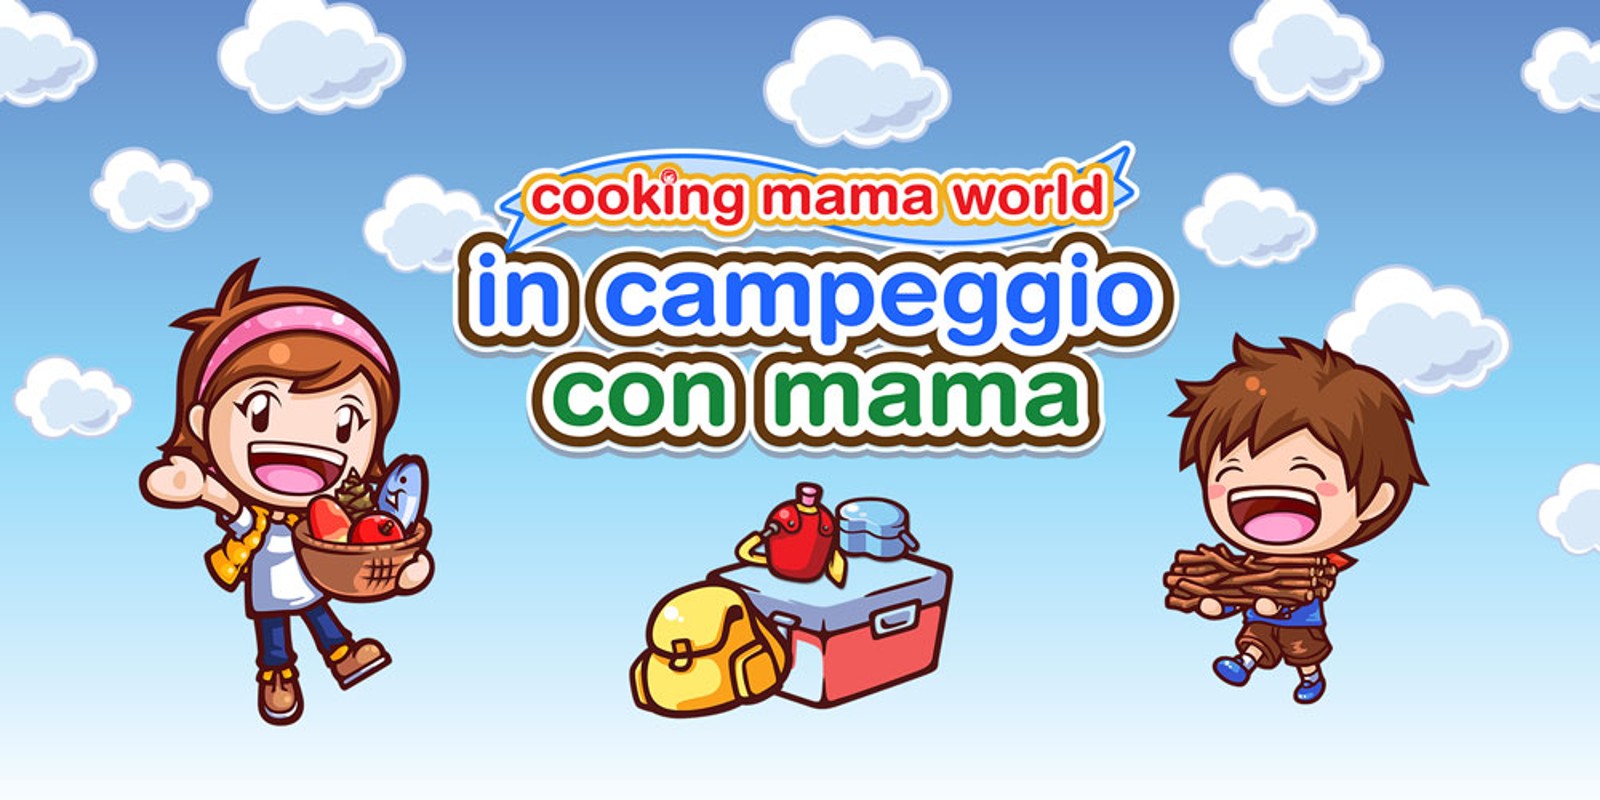 Cooking Mama World: in campeggio con mama